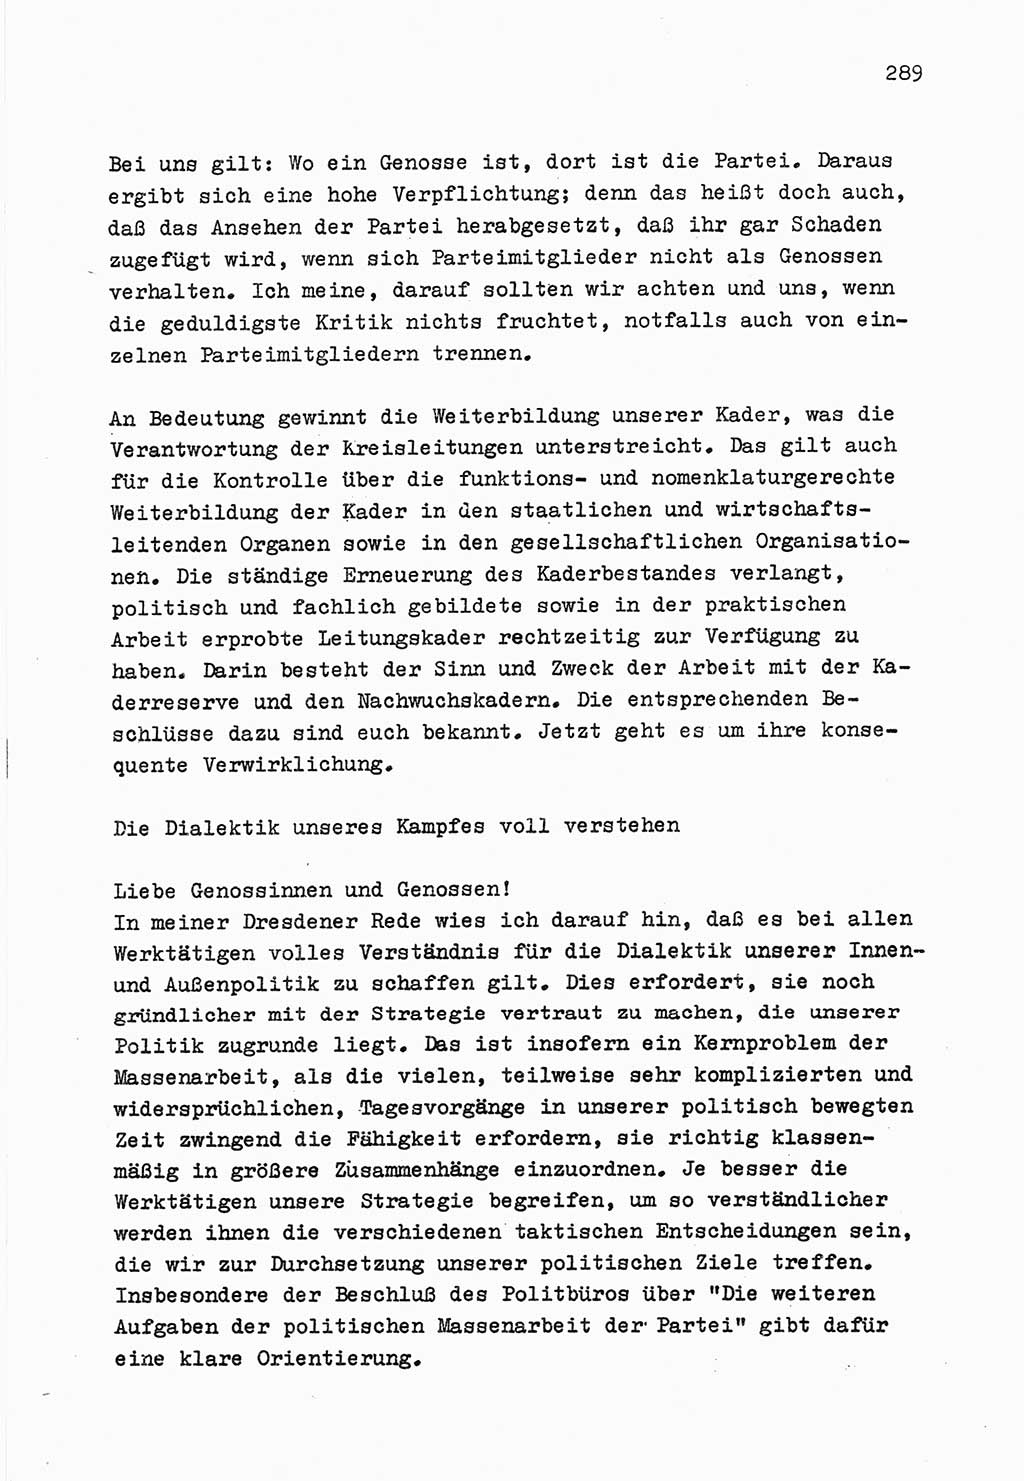 Zu Fragen der Parteiarbeit [Sozialistische Einheitspartei Deutschlands (SED) Deutsche Demokratische Republik (DDR)] 1979, Seite 289 (Fr. PA SED DDR 1979, S. 289)